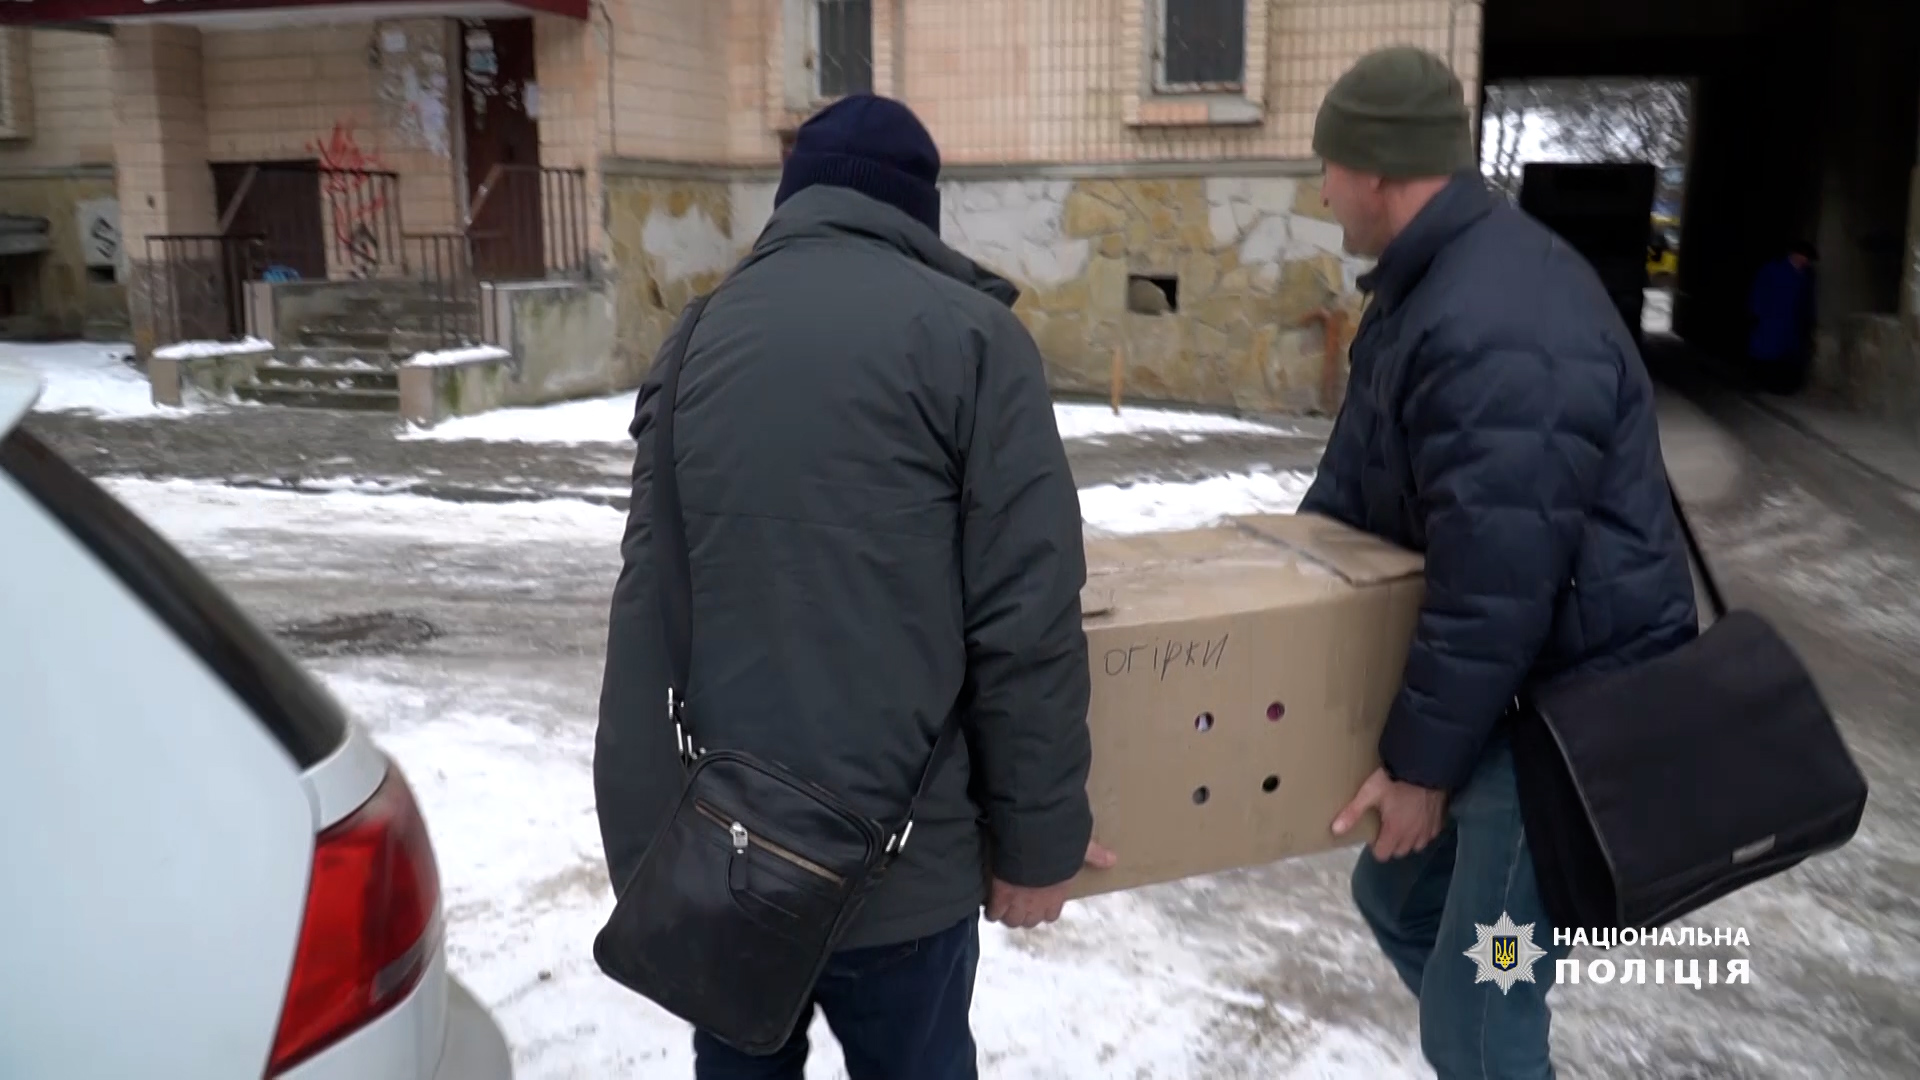 Допомога на фронт: жителі Тернопільщини висилають воїнам найнеобхідніше